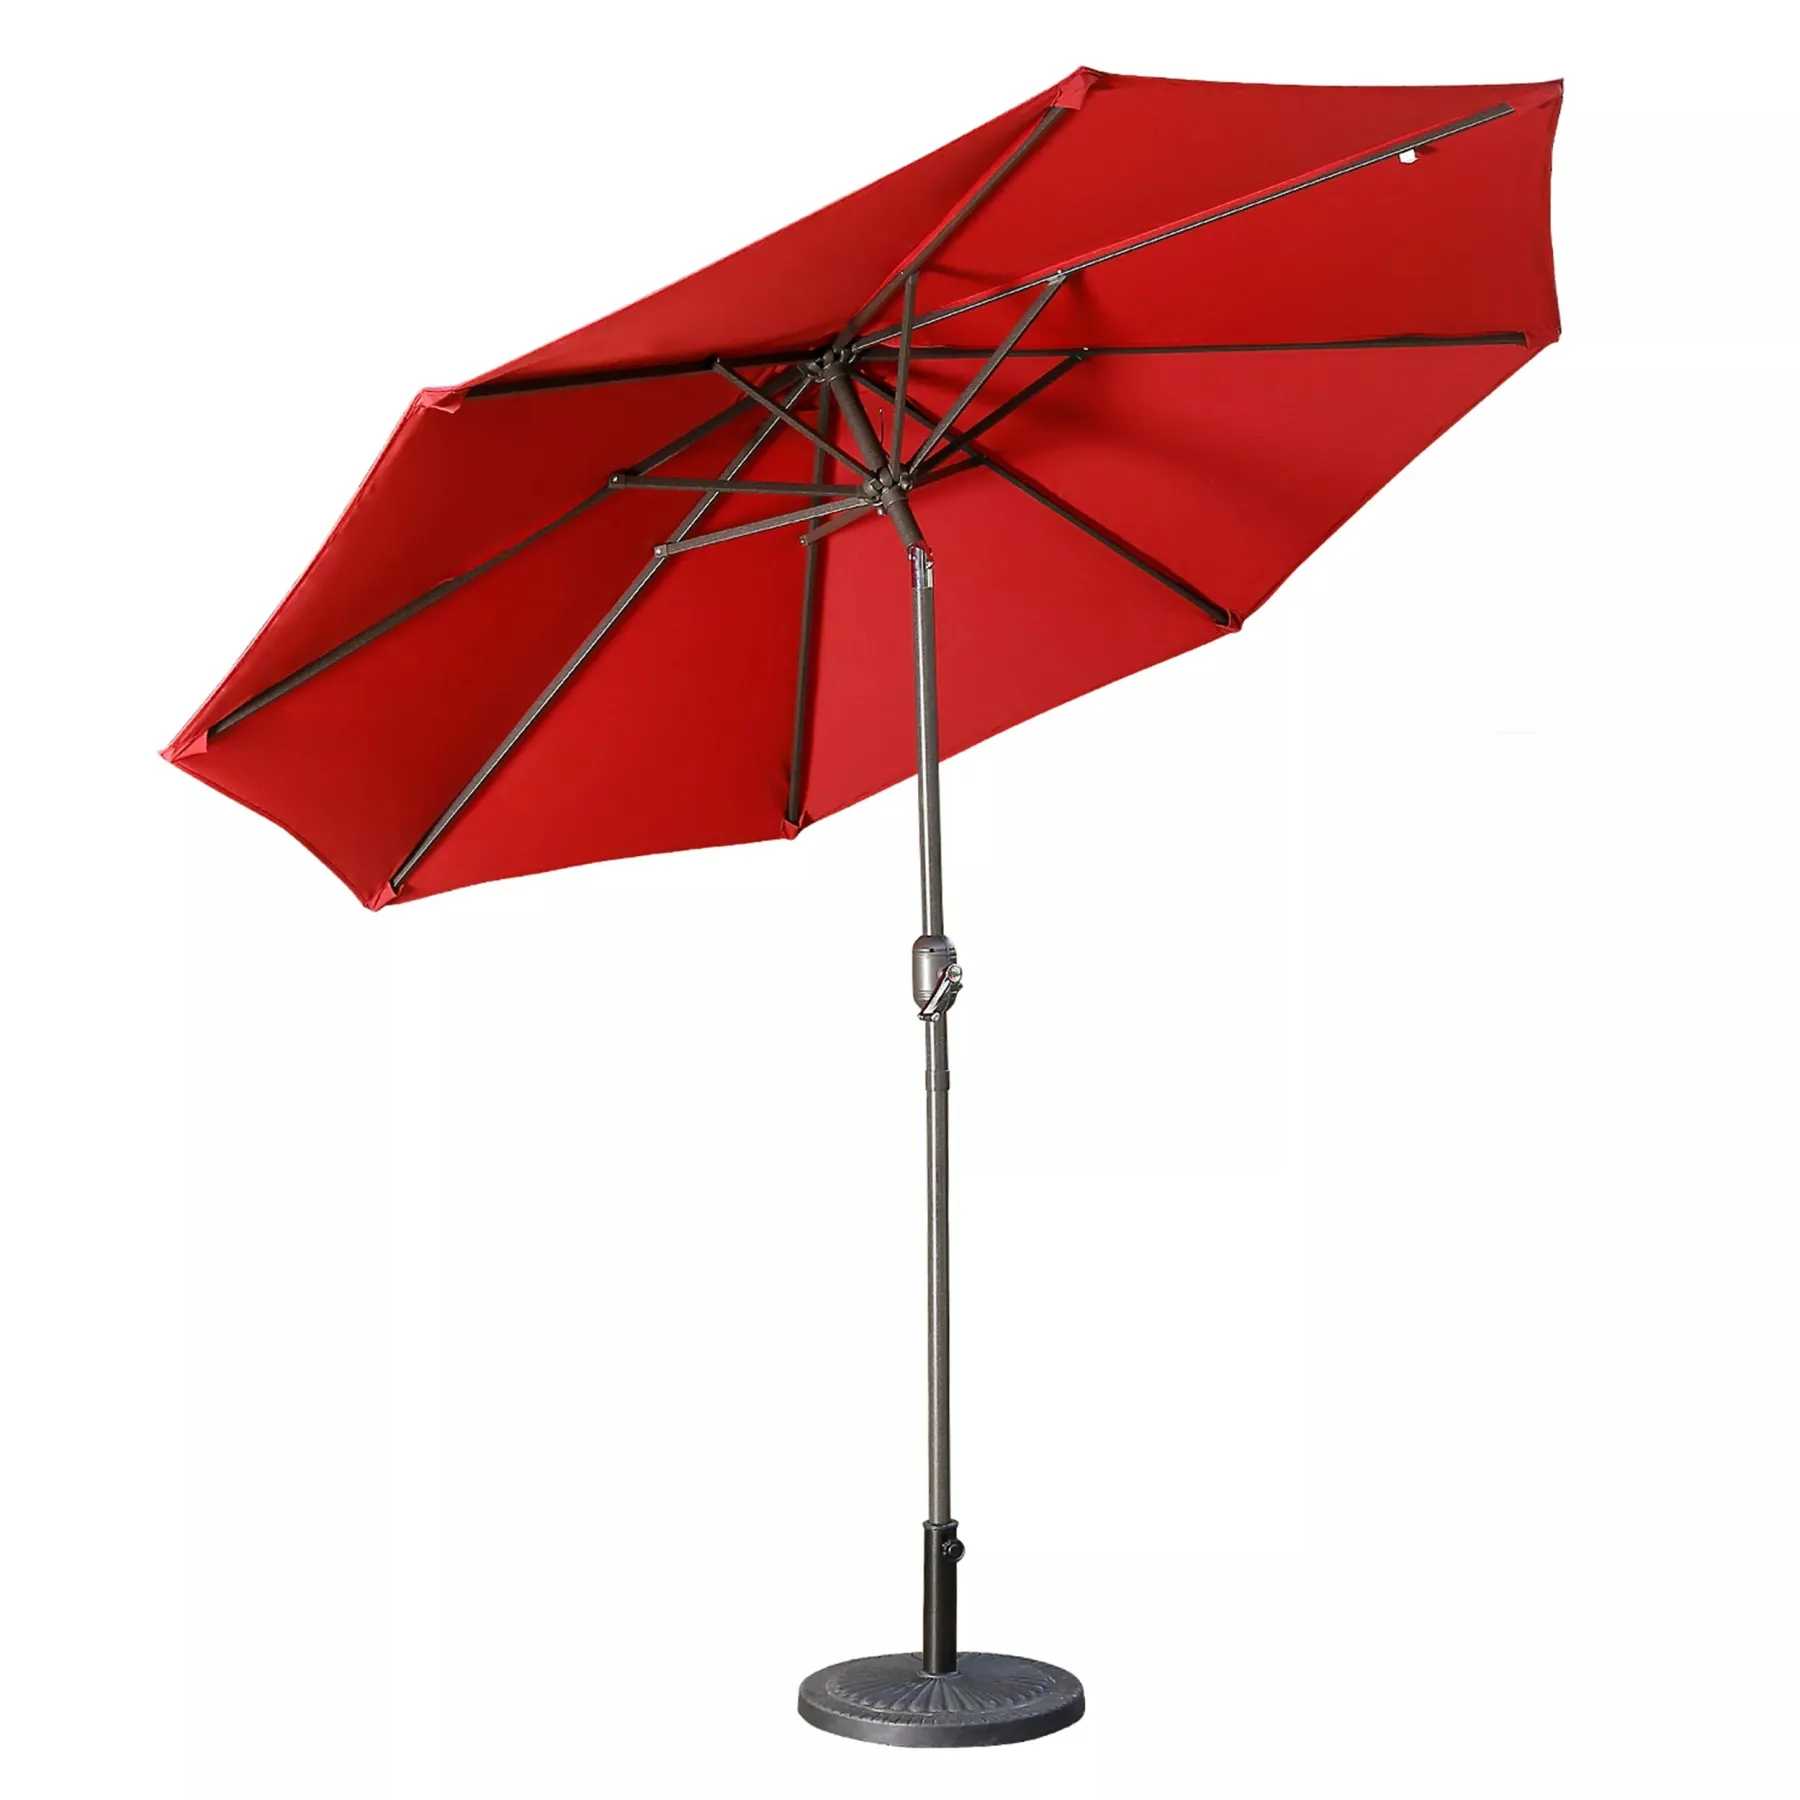 Casainc 9 ft. Alum Patio Umbrella in Red